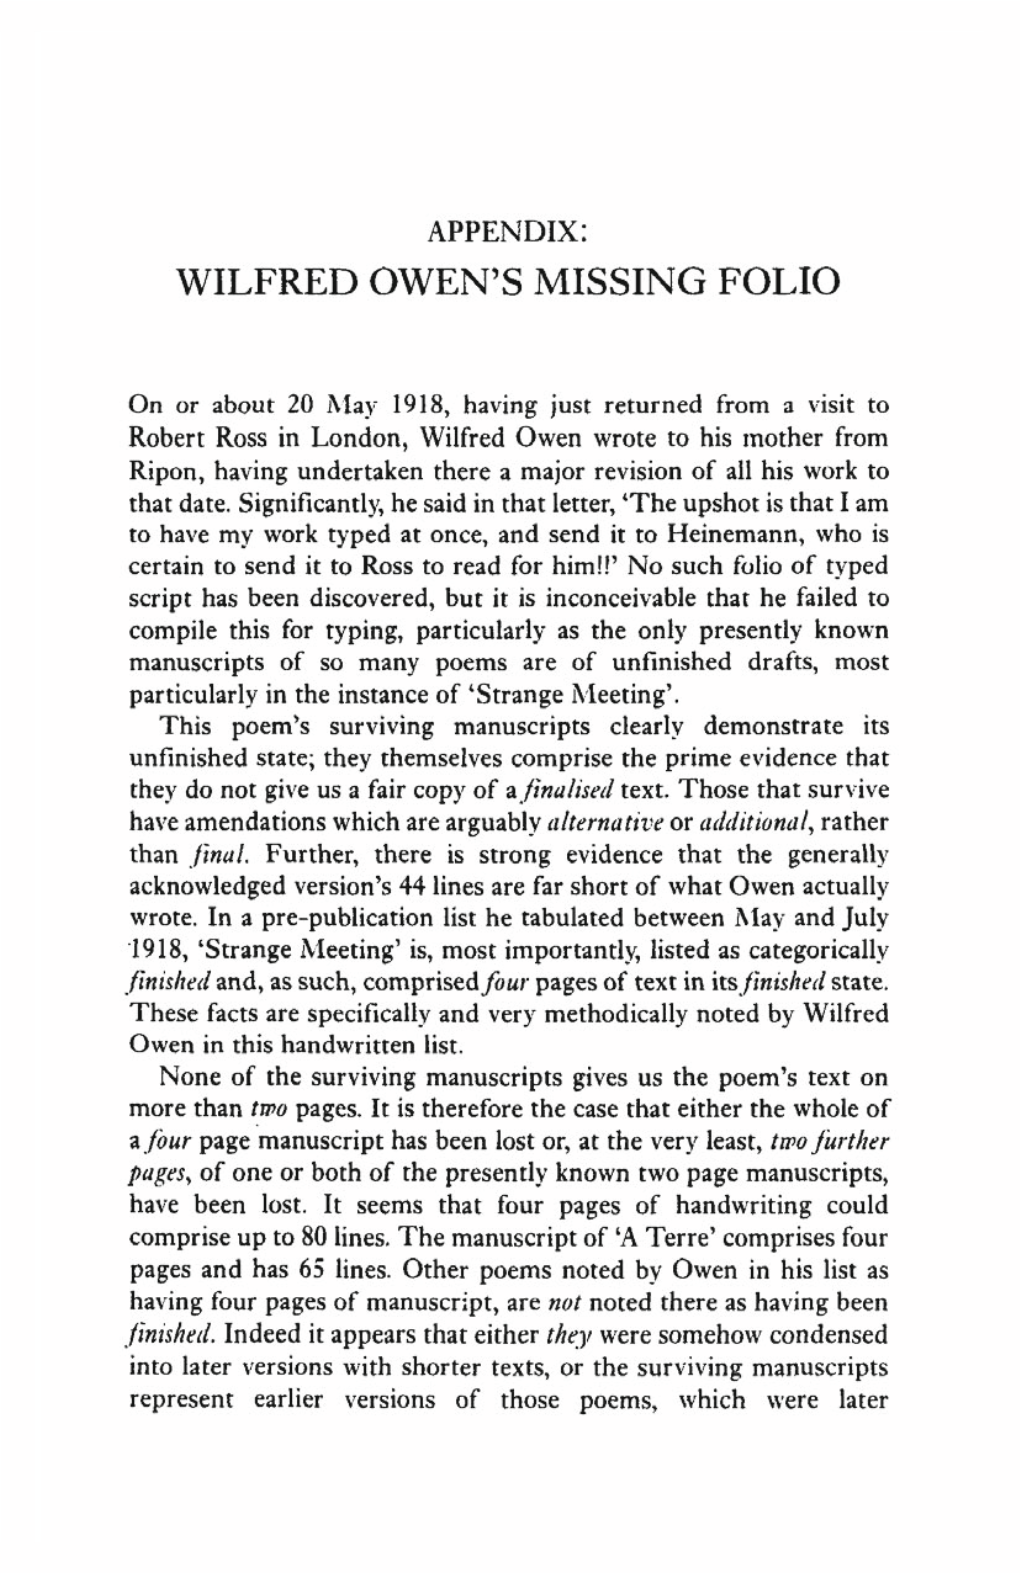 Wilfred Owen's Missing Folio